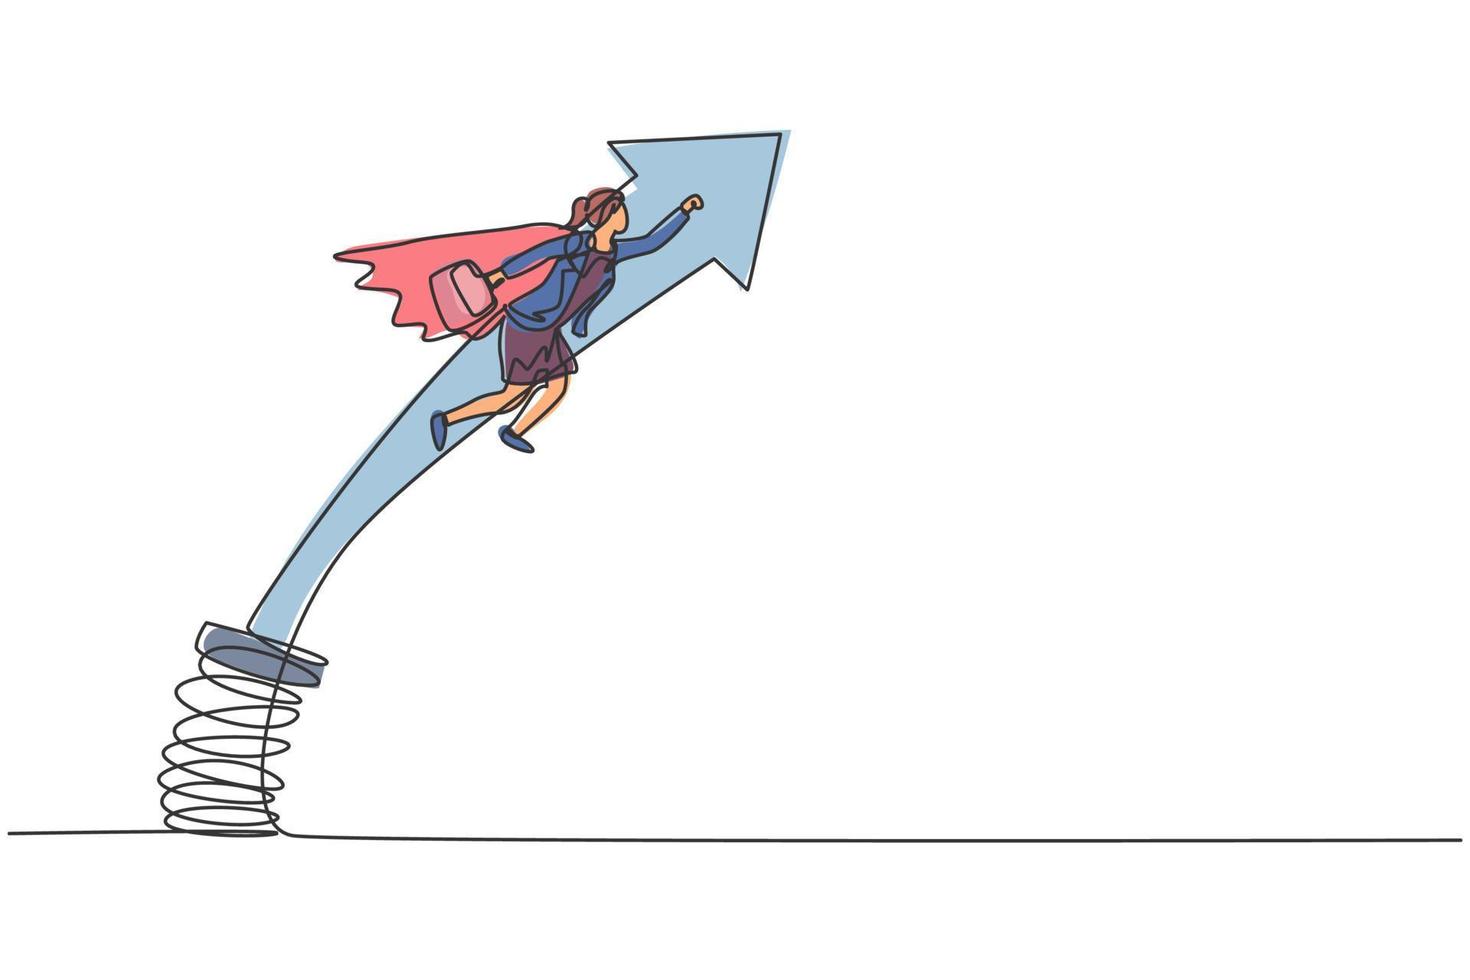 kontinuerlig enradsteckning av ung kvinnlig arbetare som flyger hoppande högt med metallfjäder. framgång affärschef minimalistisk metafor koncept. enkel linje rita design vektor grafisk illustration